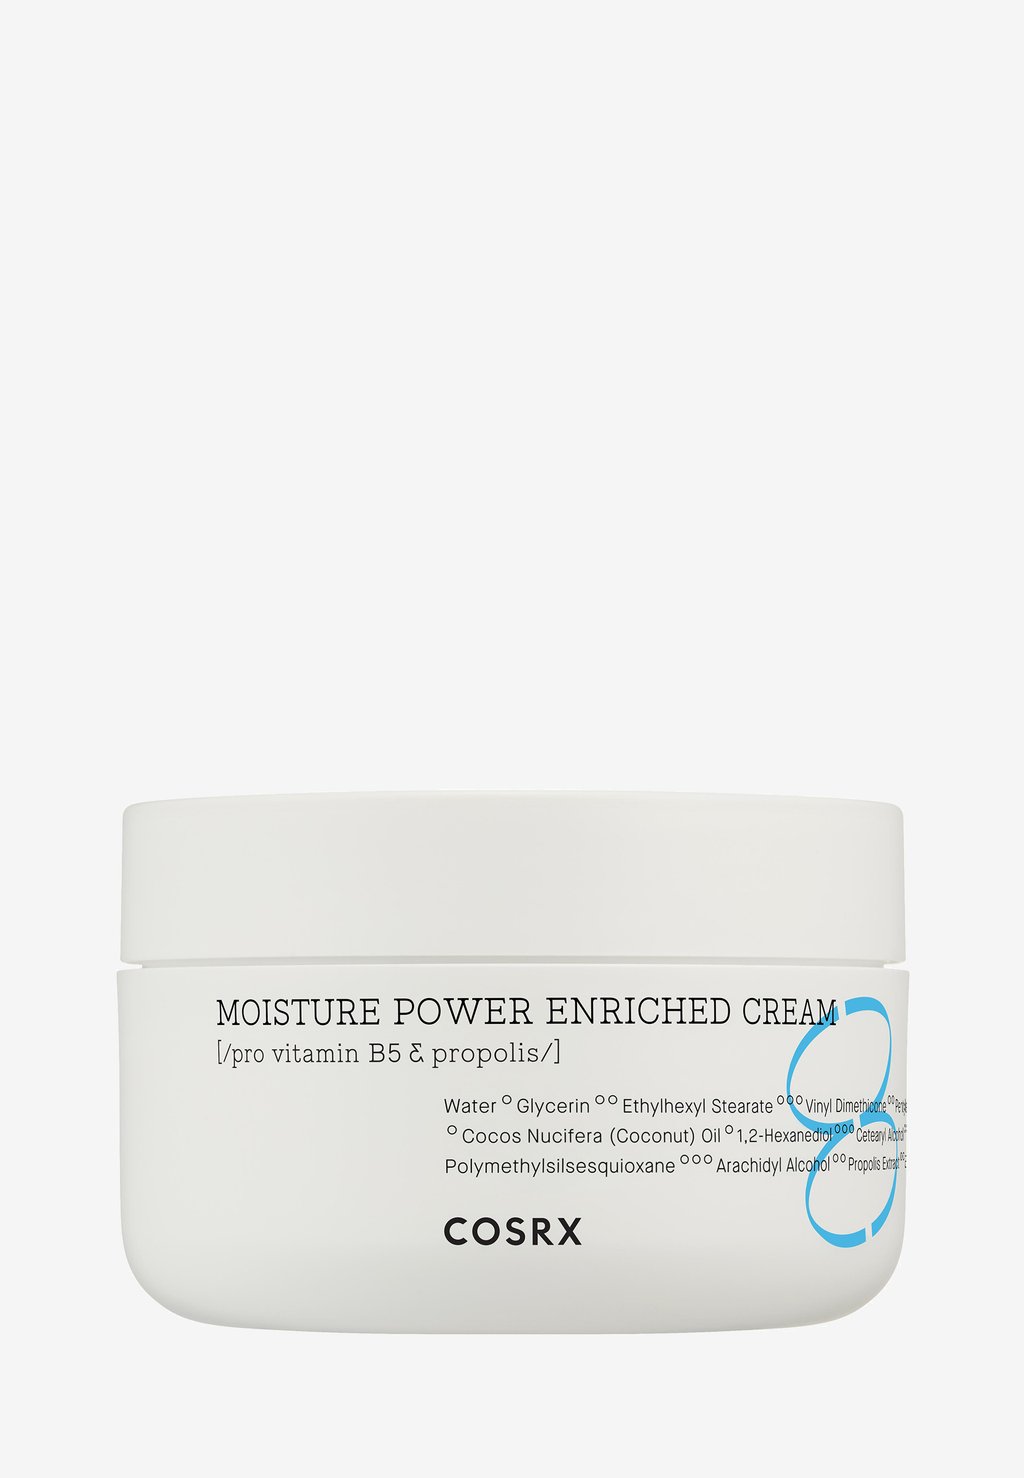 Дневной крем Moisture Power Enriched Cream COSRX крем для глубокого увлажнения кожи cosrx hydrium moisture power enriched cream 50 мл